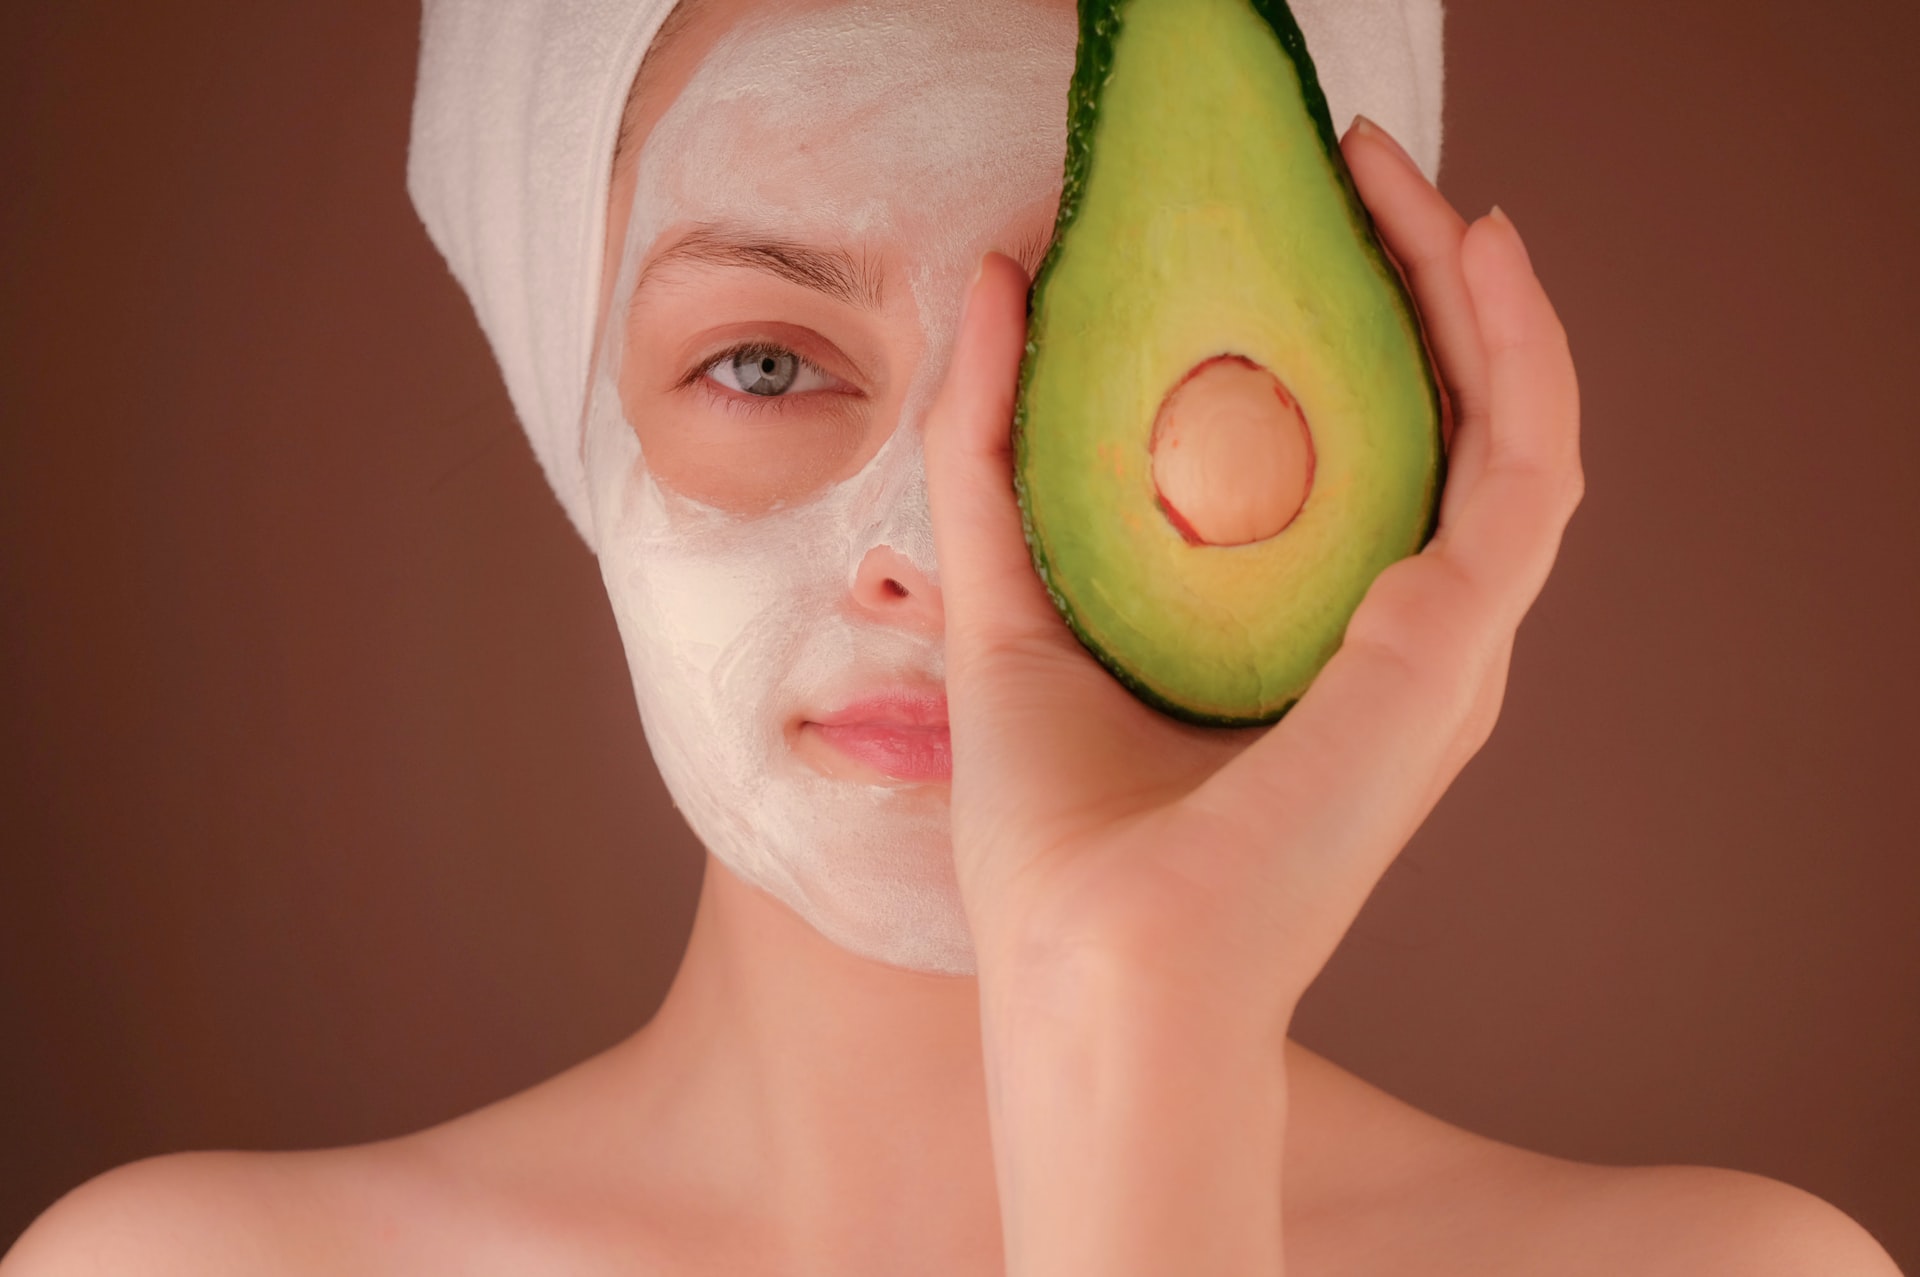 Avocado mask skincare